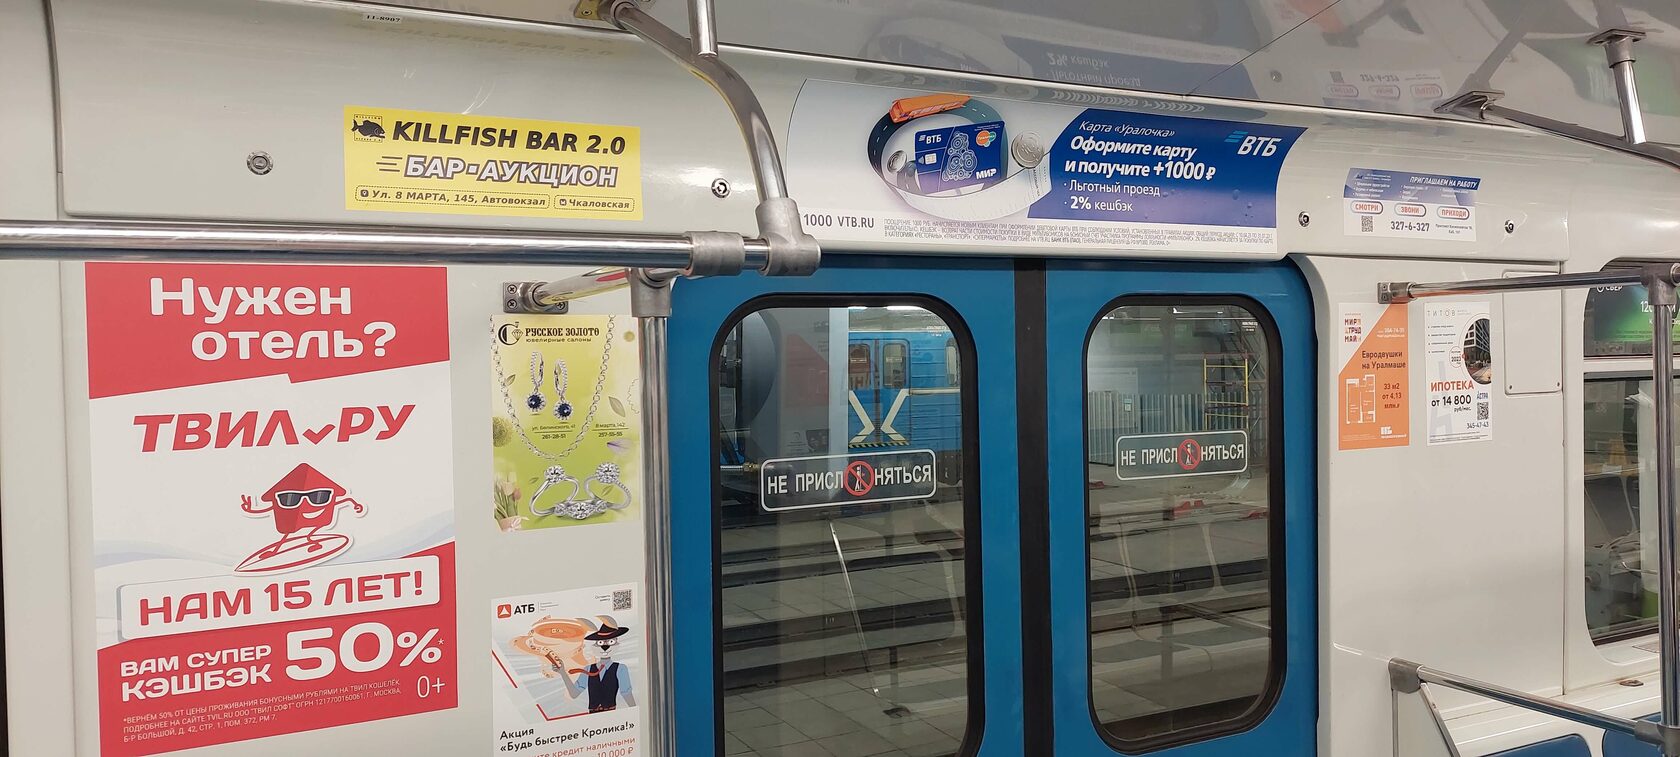 Плакаты и другая реклама в метро